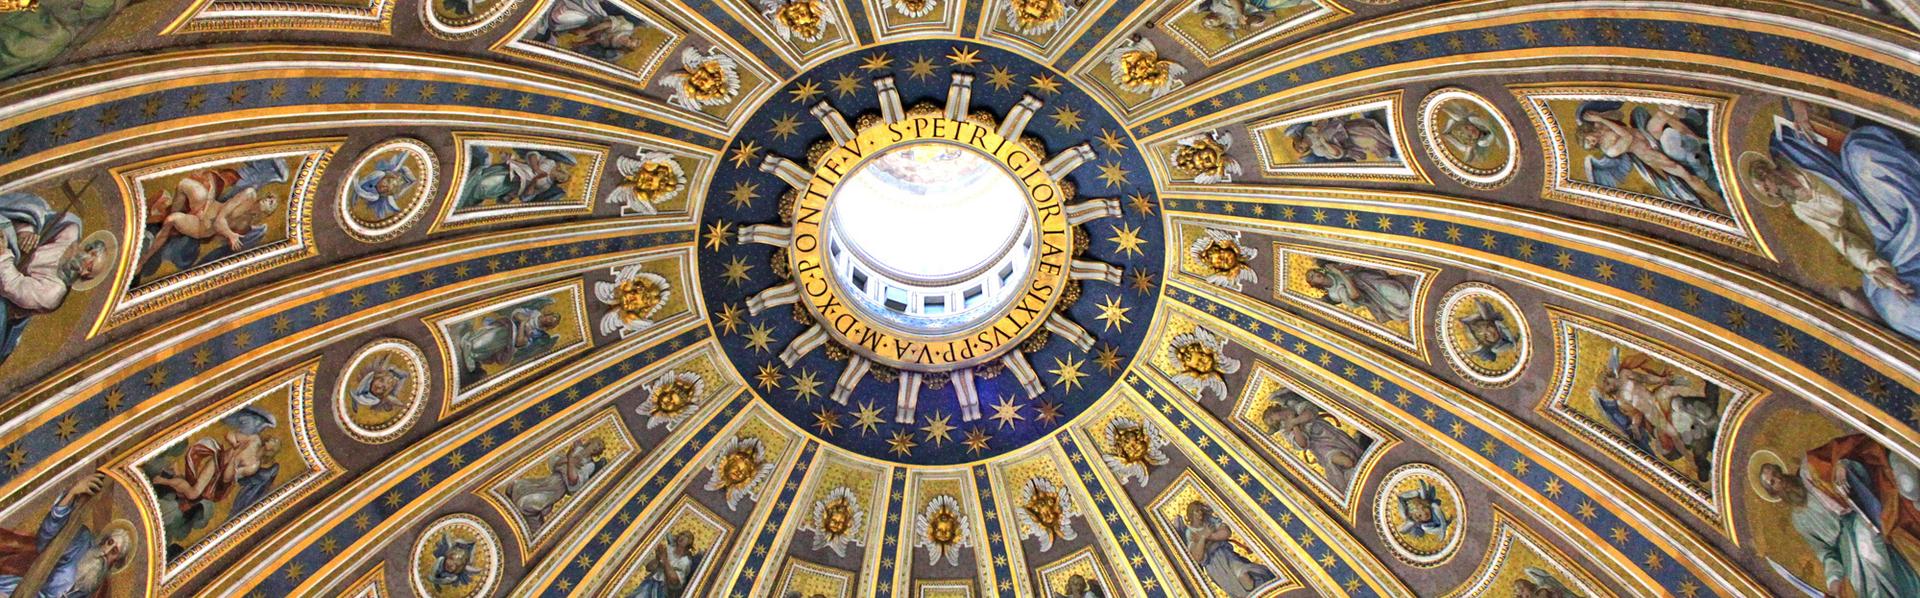 La coupole de la Basilique Saint-Pierre à Rome. [Fotolia - Open Mind Pictures]